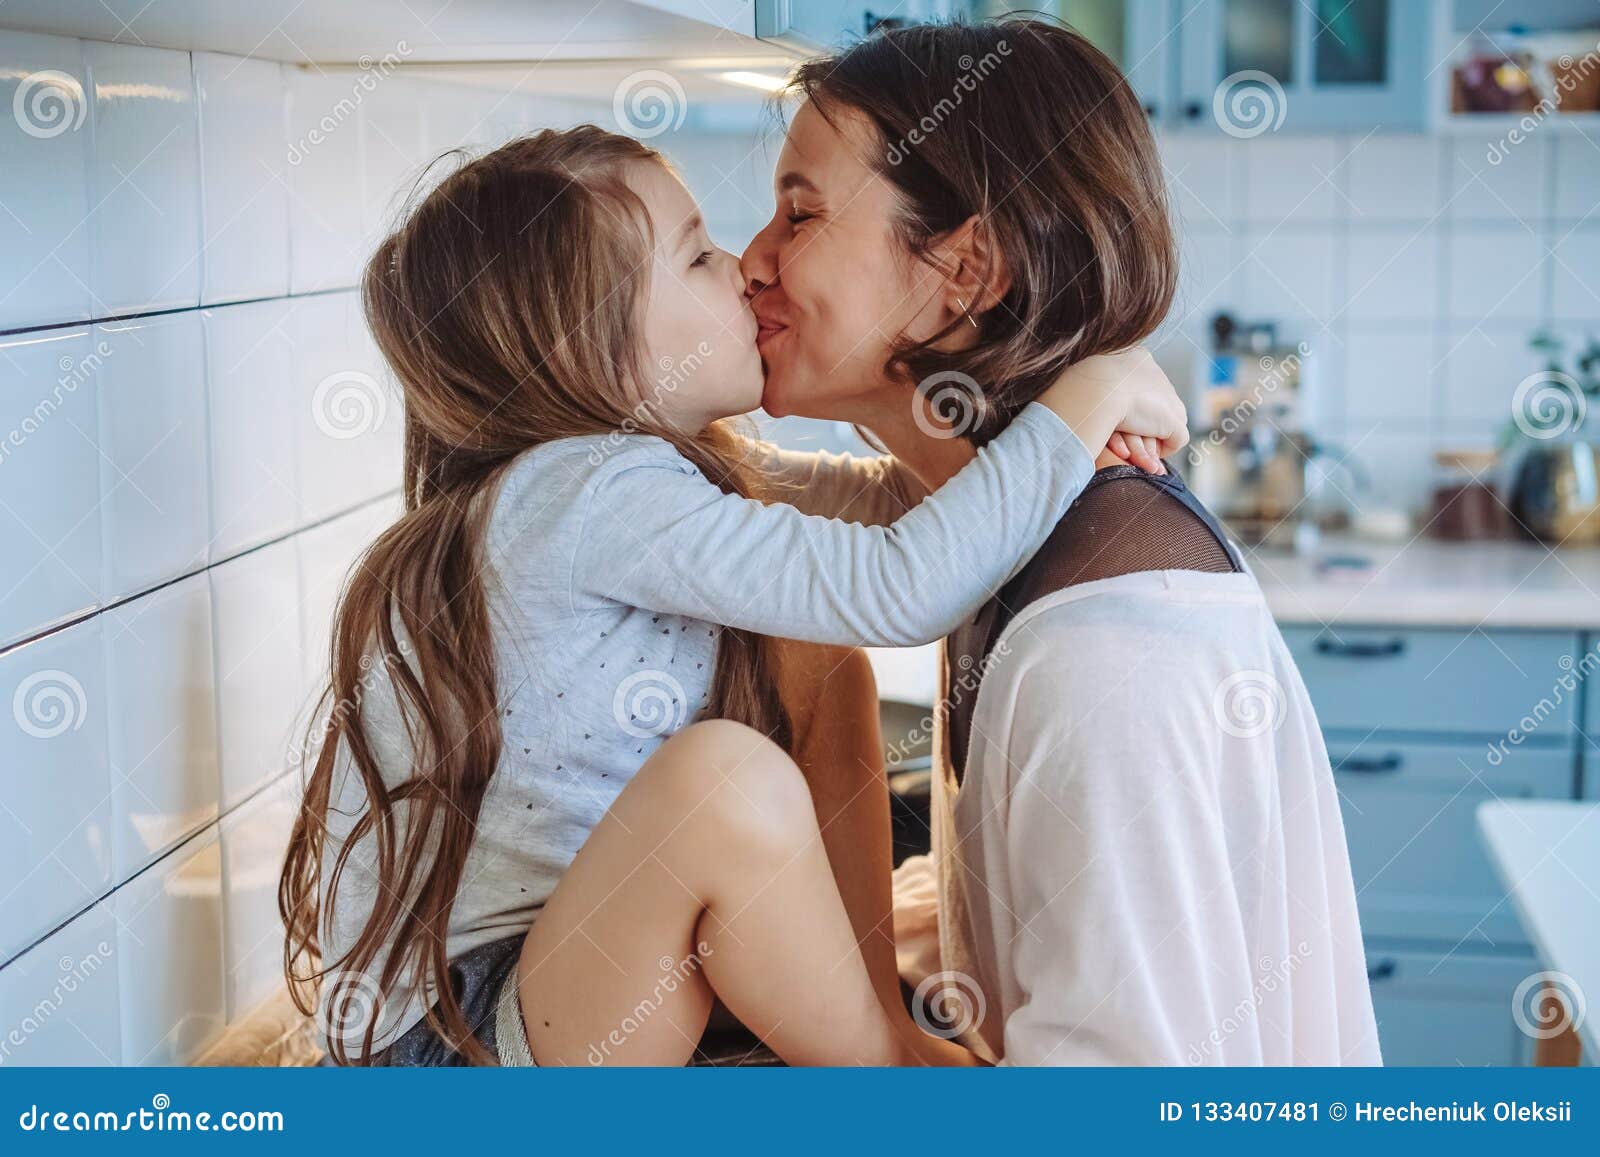 moms kissing daughters